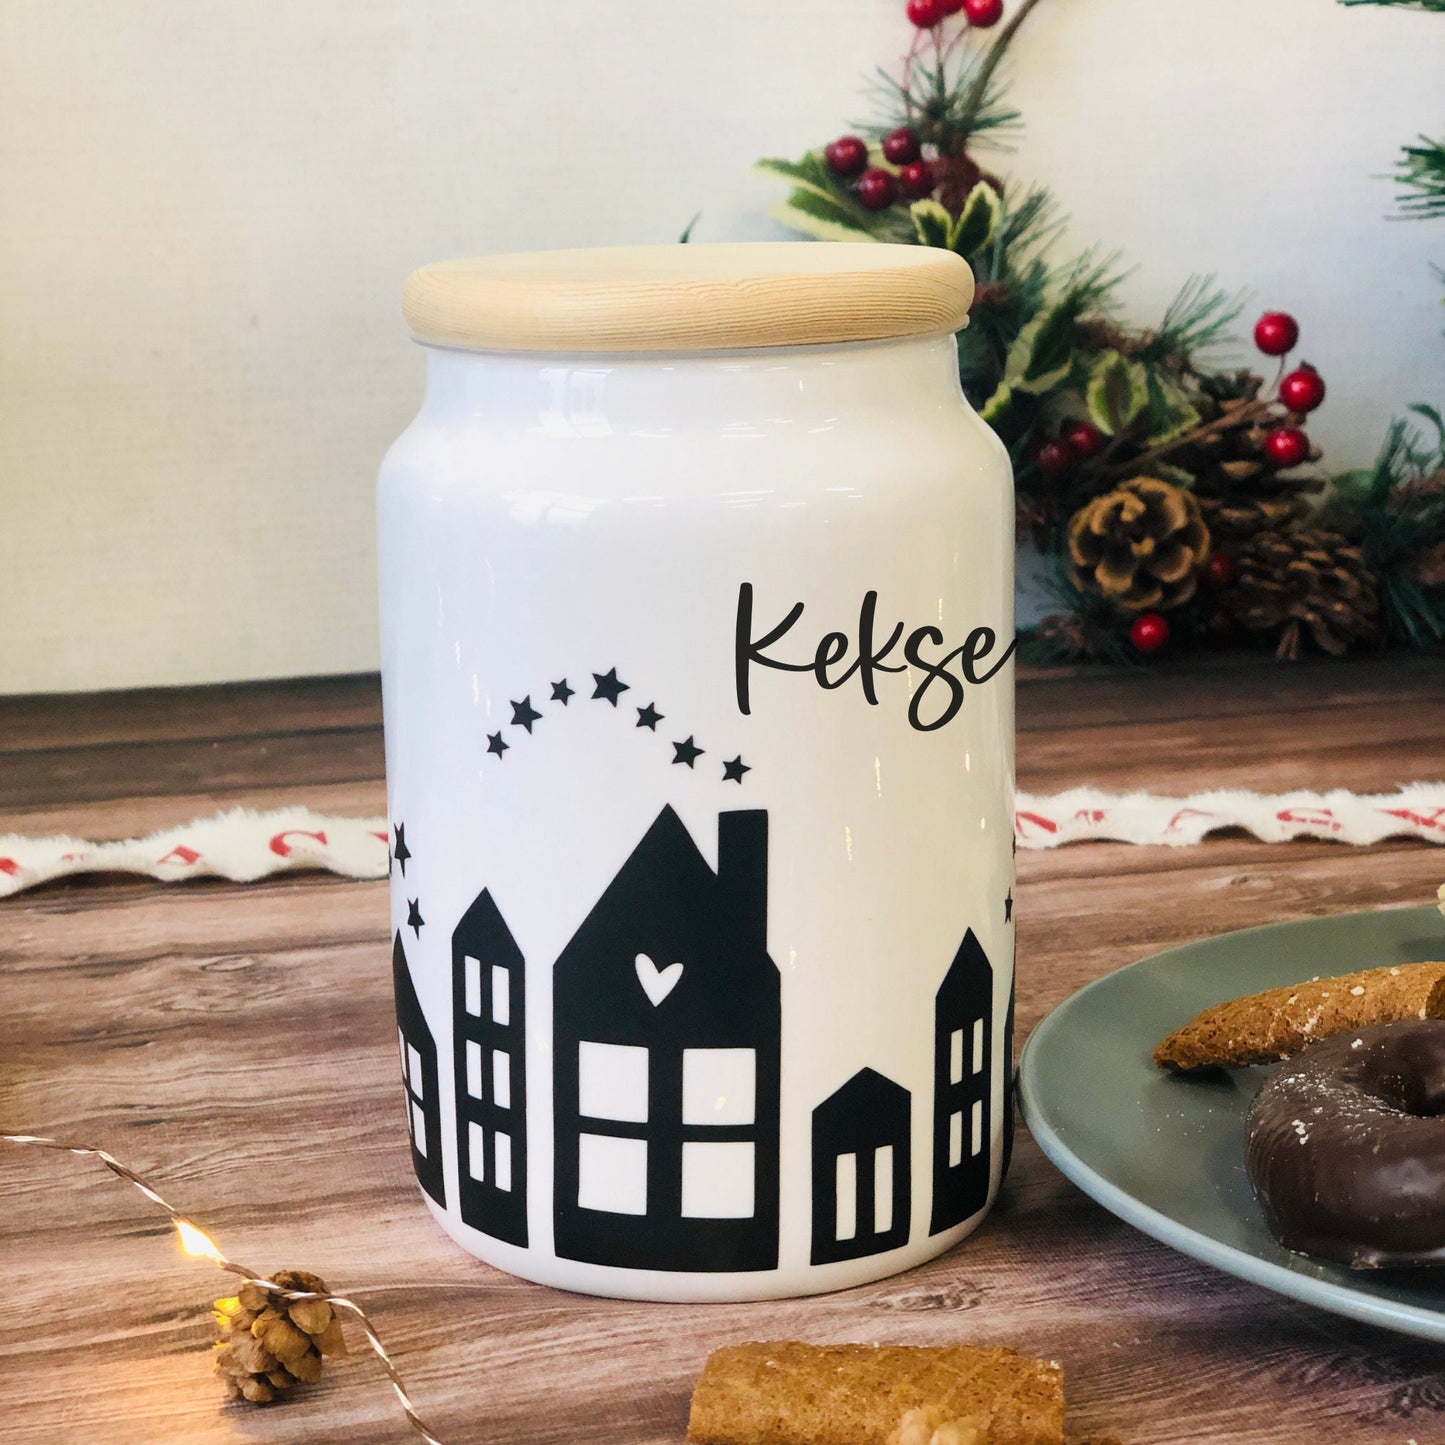 Keksdose personalisiert mit Wunschtext, Geschenk Weihnachten, Mama, Oma, Plätzchendose, Vorratsdose Keramik mit Holzdeckel - Design Häuser